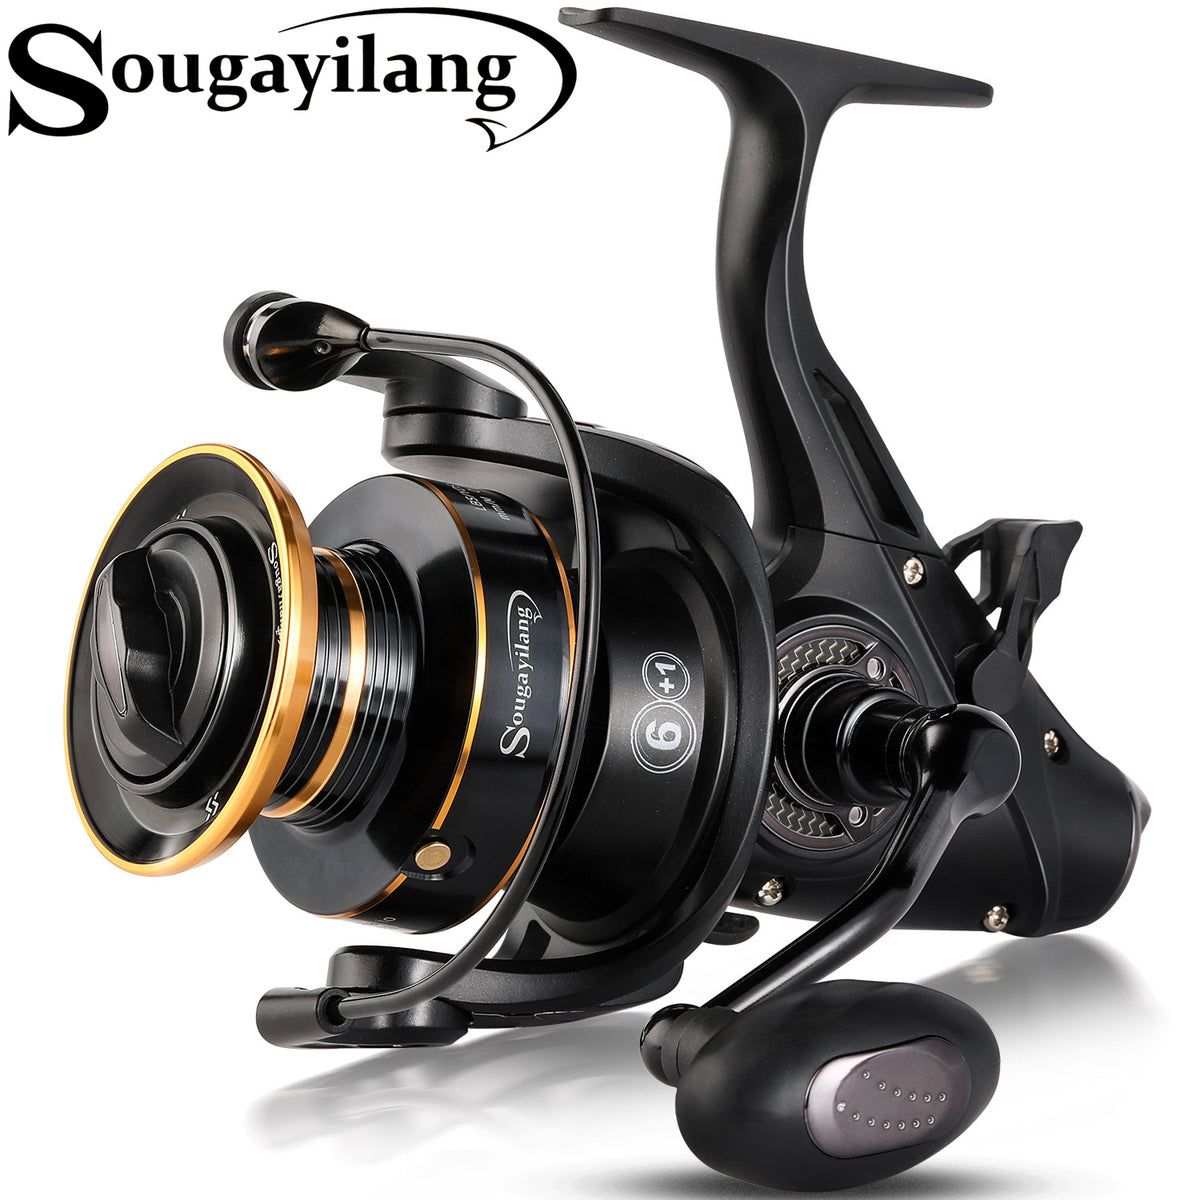 Sougayilang Spinning Carp Fishing Reel 6+1BB 5.5:1/4.7:1 High Speed G